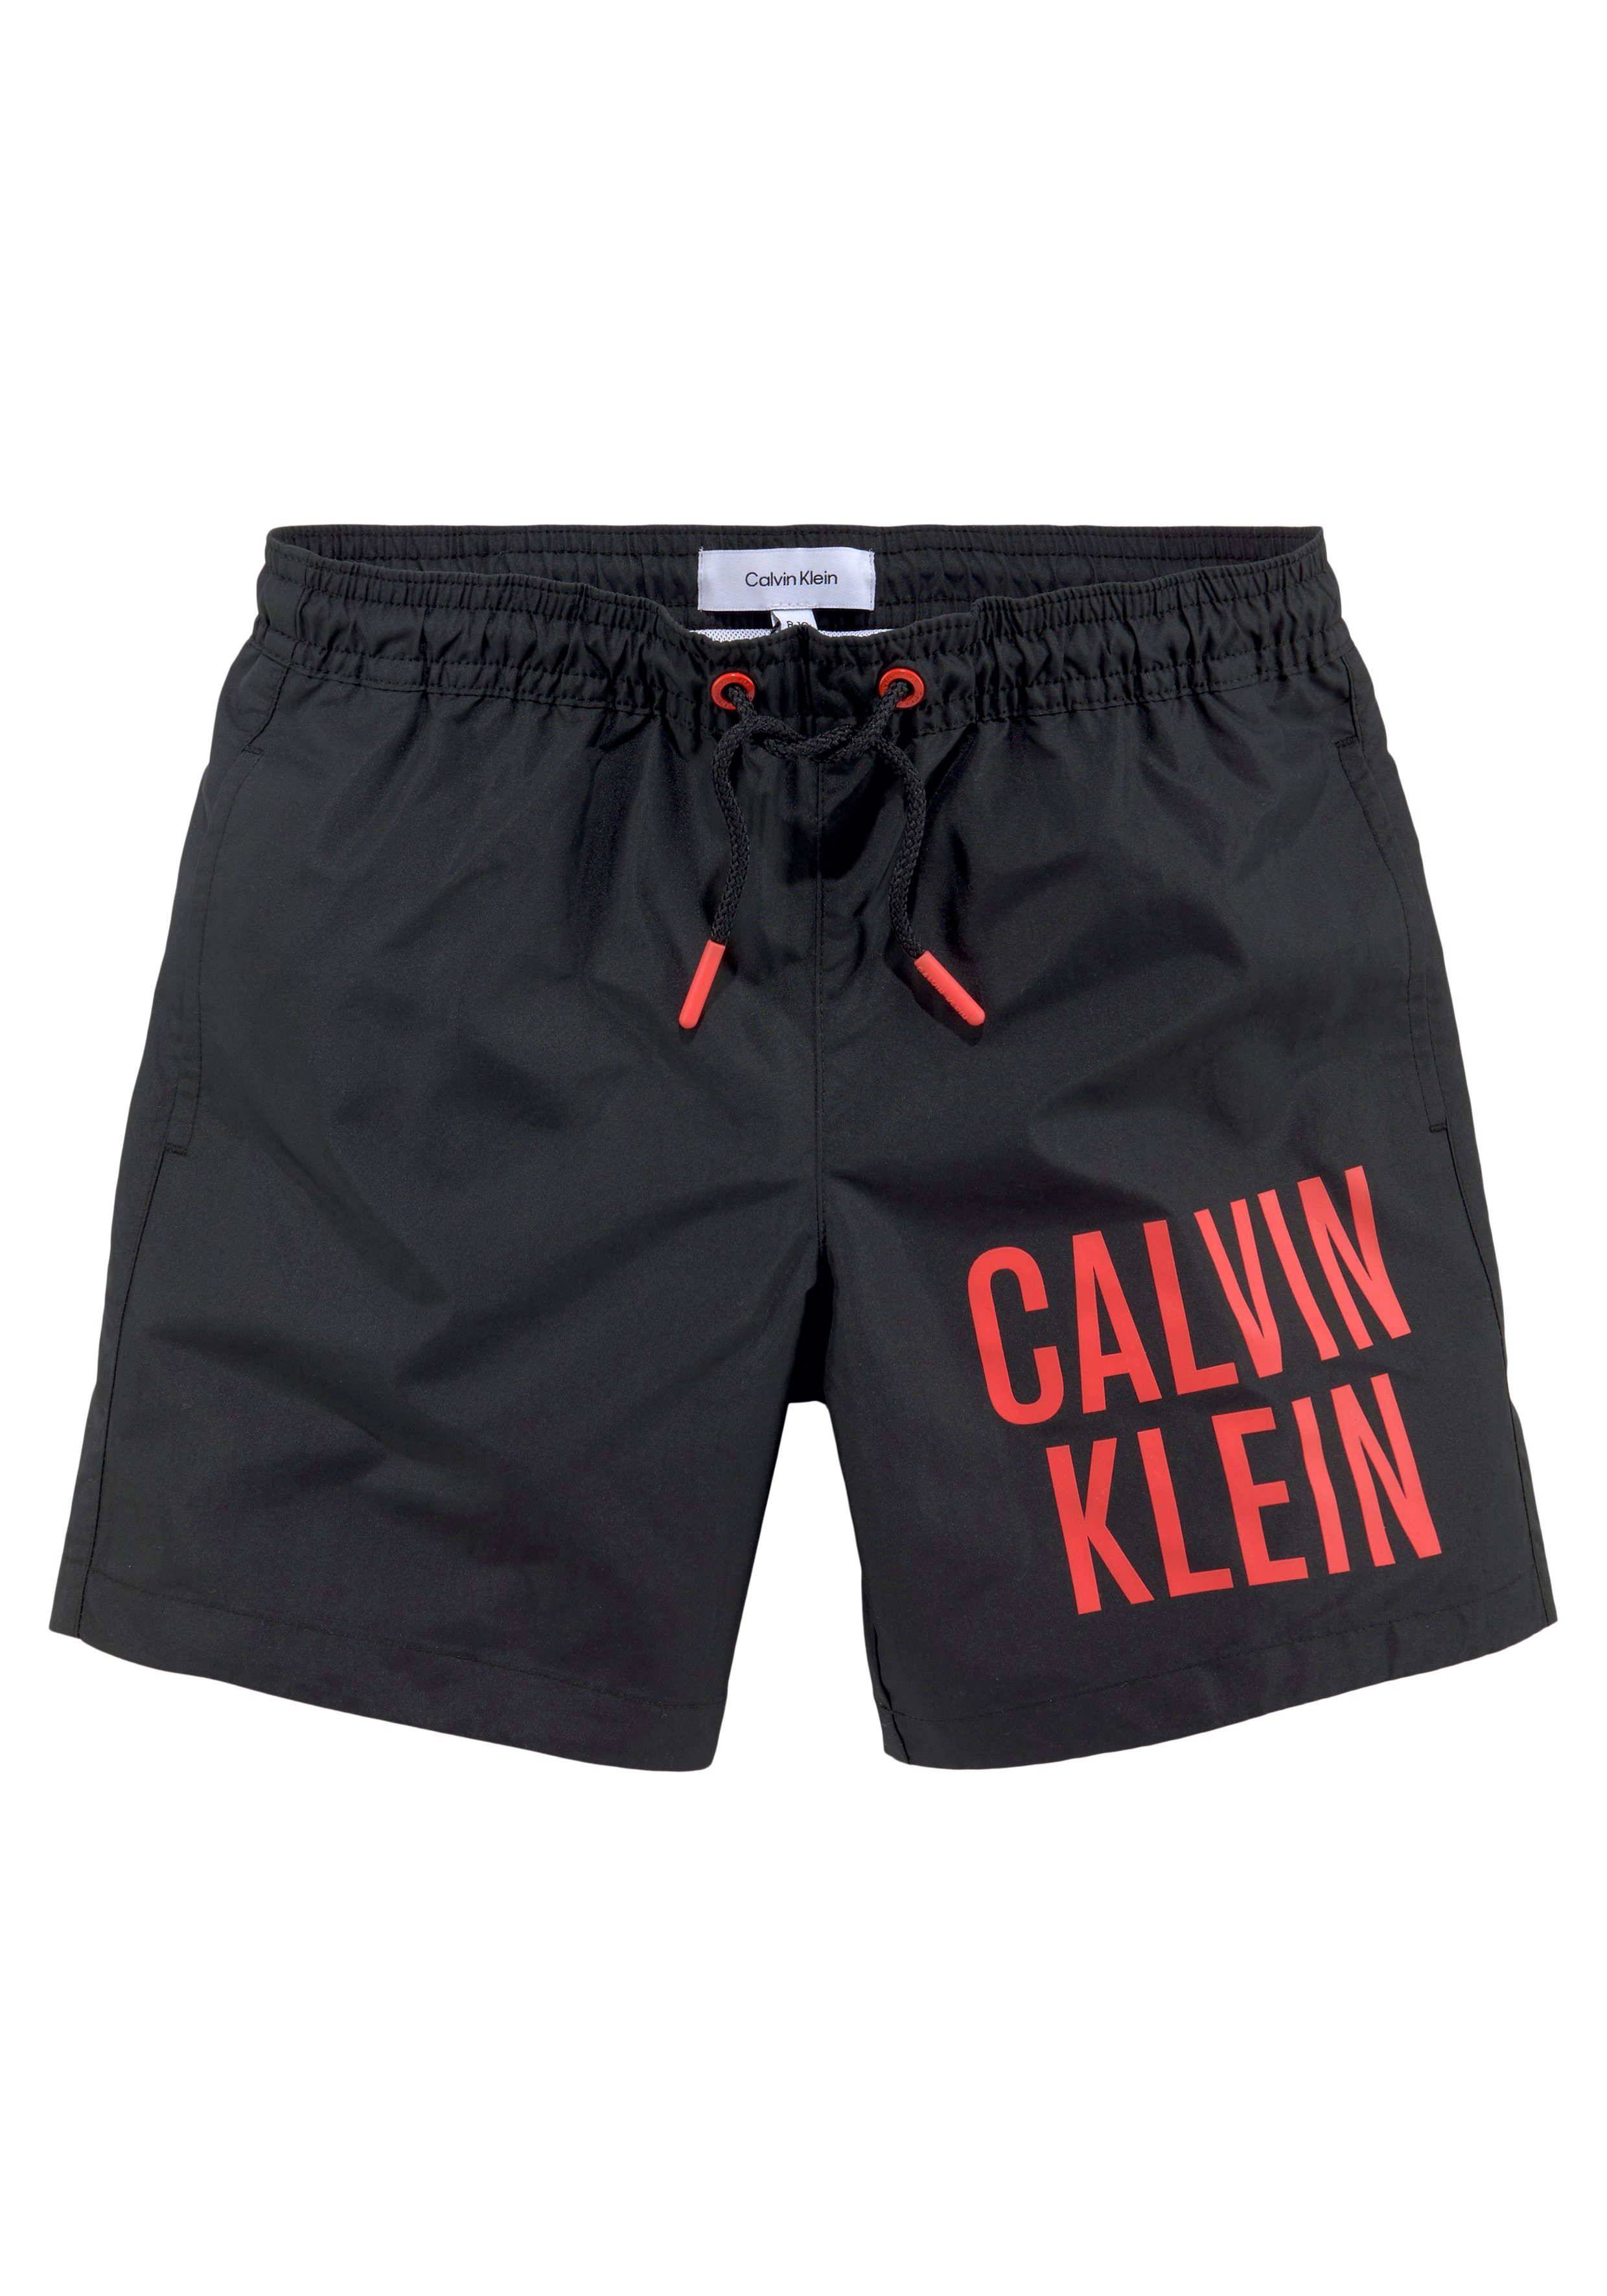 Calvin Klein Swimwear Badeshorts MEDIUM DRAWSTRING mit Calvin Klein Schriftzug Pvh-Black